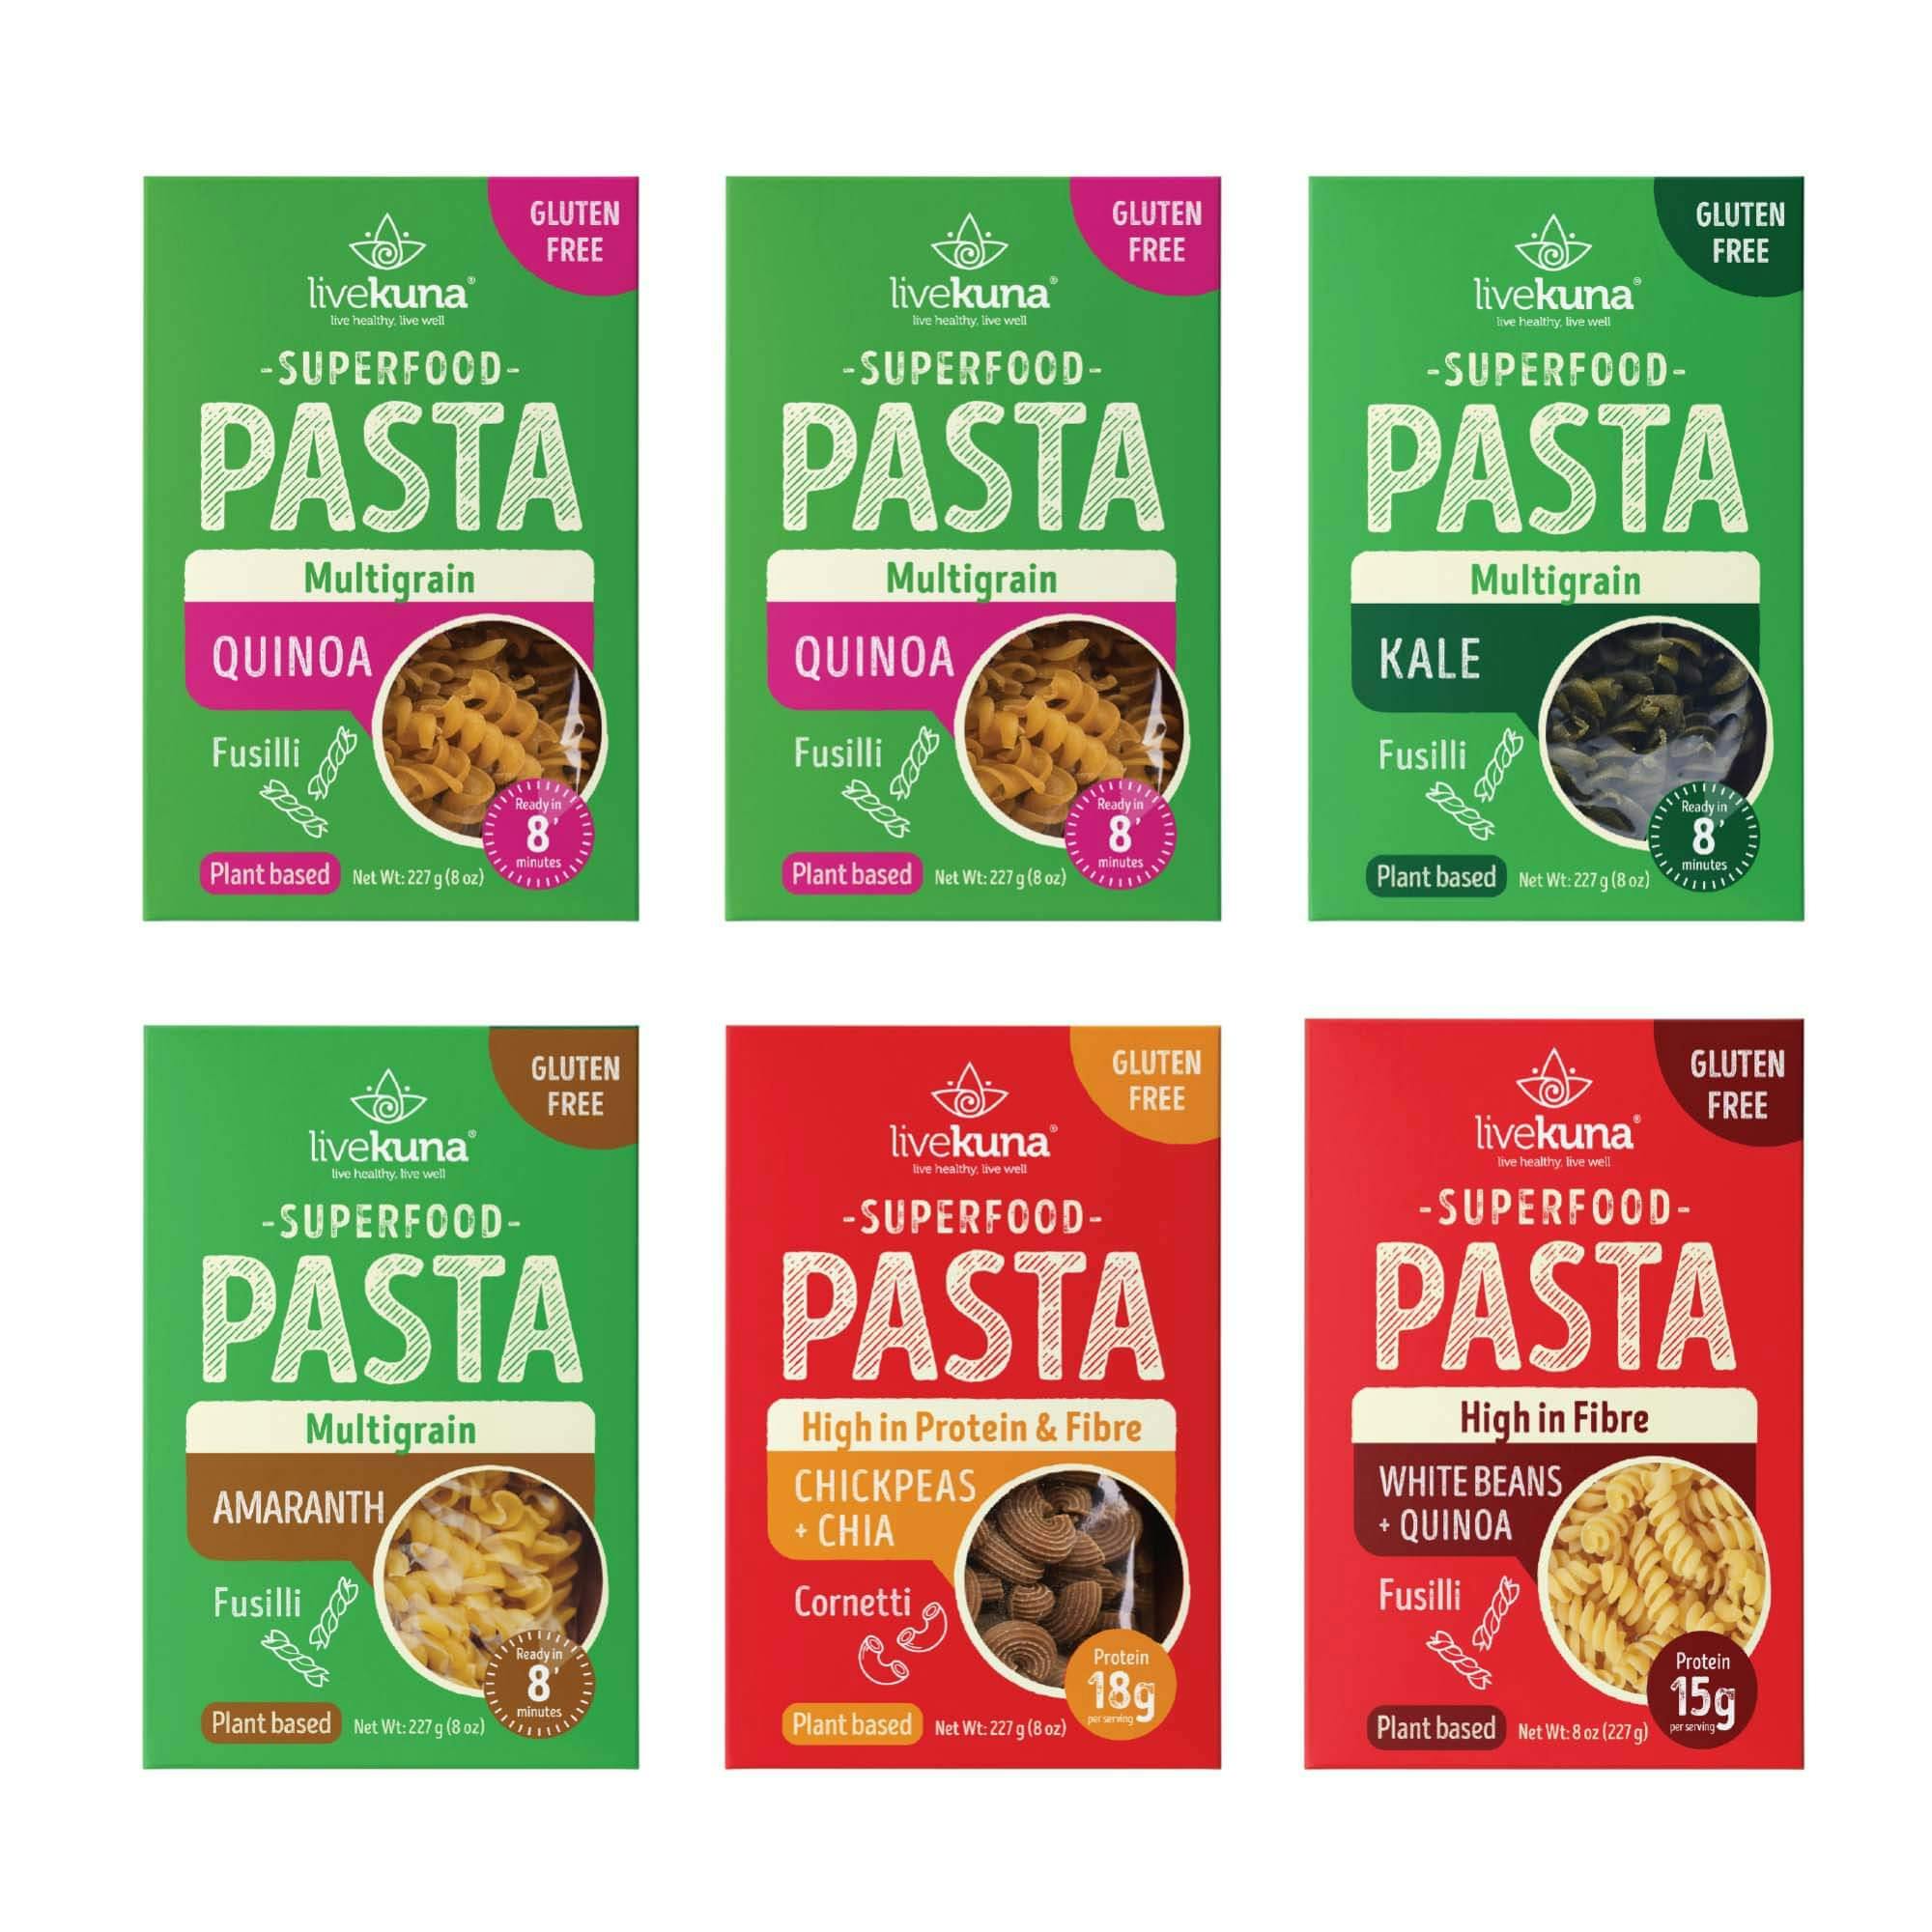 pastas variety pack 2000 x 2000-10 3.jpg